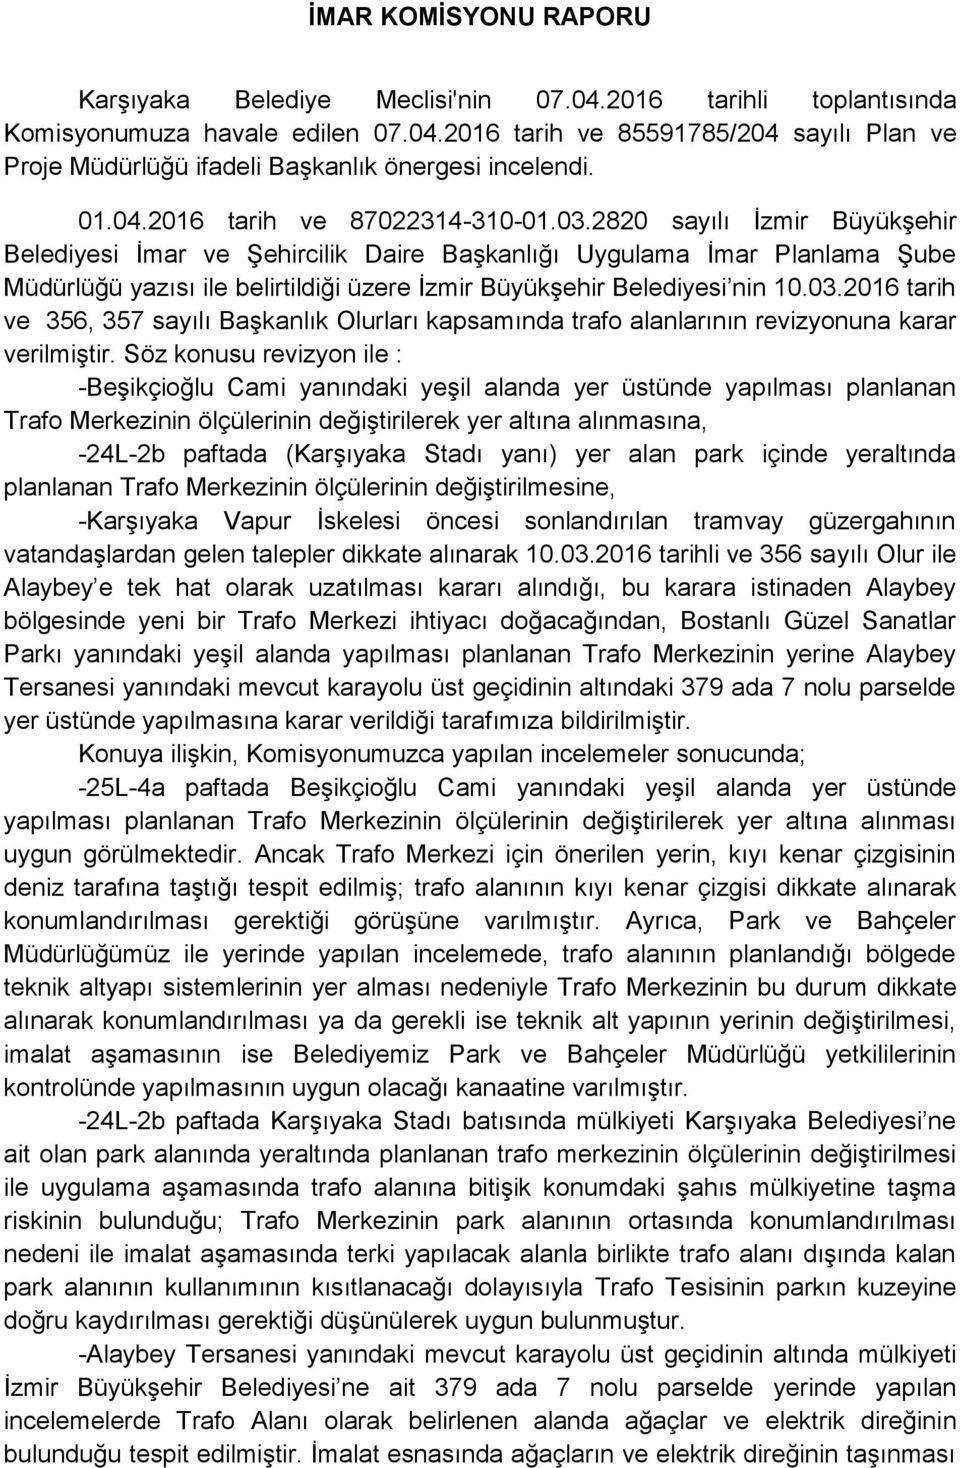 2820 sayılı İzmir Büyükşehir Belediyesi İmar ve Şehircilik Daire Başkanlığı Uygulama İmar Planlama Şube Müdürlüğü yazısı ile belirtildiği üzere İzmir Büyükşehir Belediyesi nin 10.03.